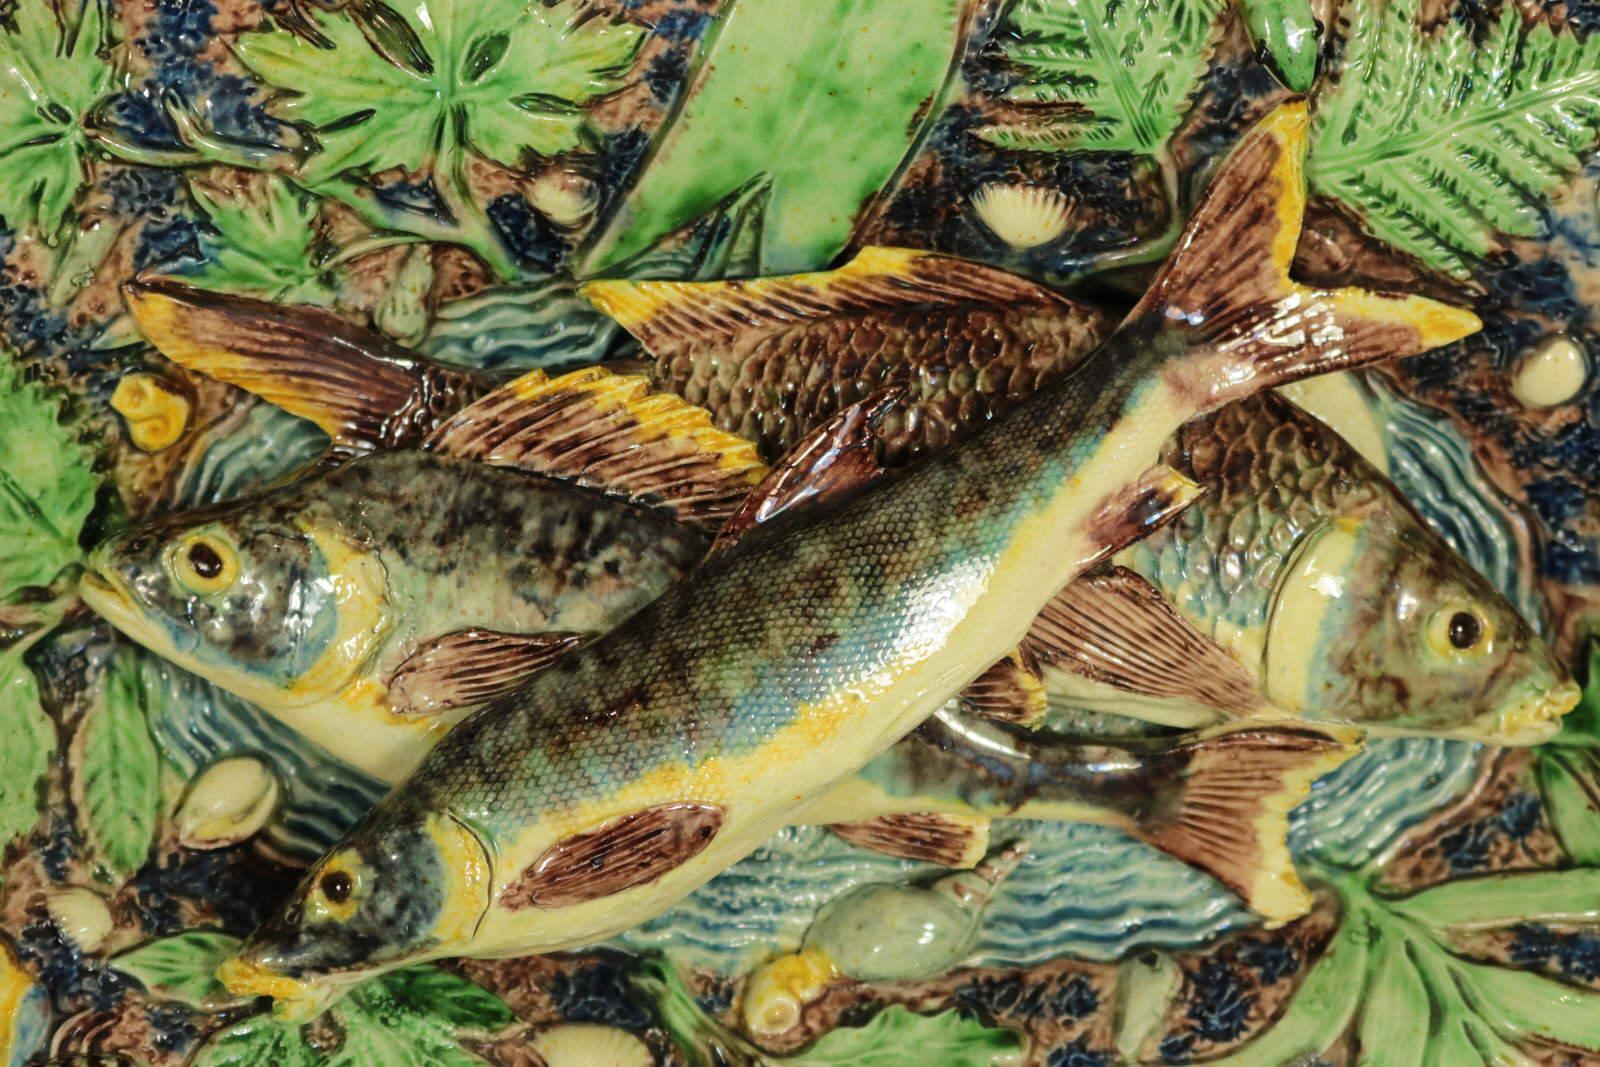 Wandteller aus französischer Palissy-Majolika der Pariser Schule mit drei sich überlappenden Fischen auf einem Grund mit Wassereffekt in der Mitte. Eine Eidechse, Schalentiere, Insekten und Blätter am Rand. Färbung: grün, blau, braun, sind